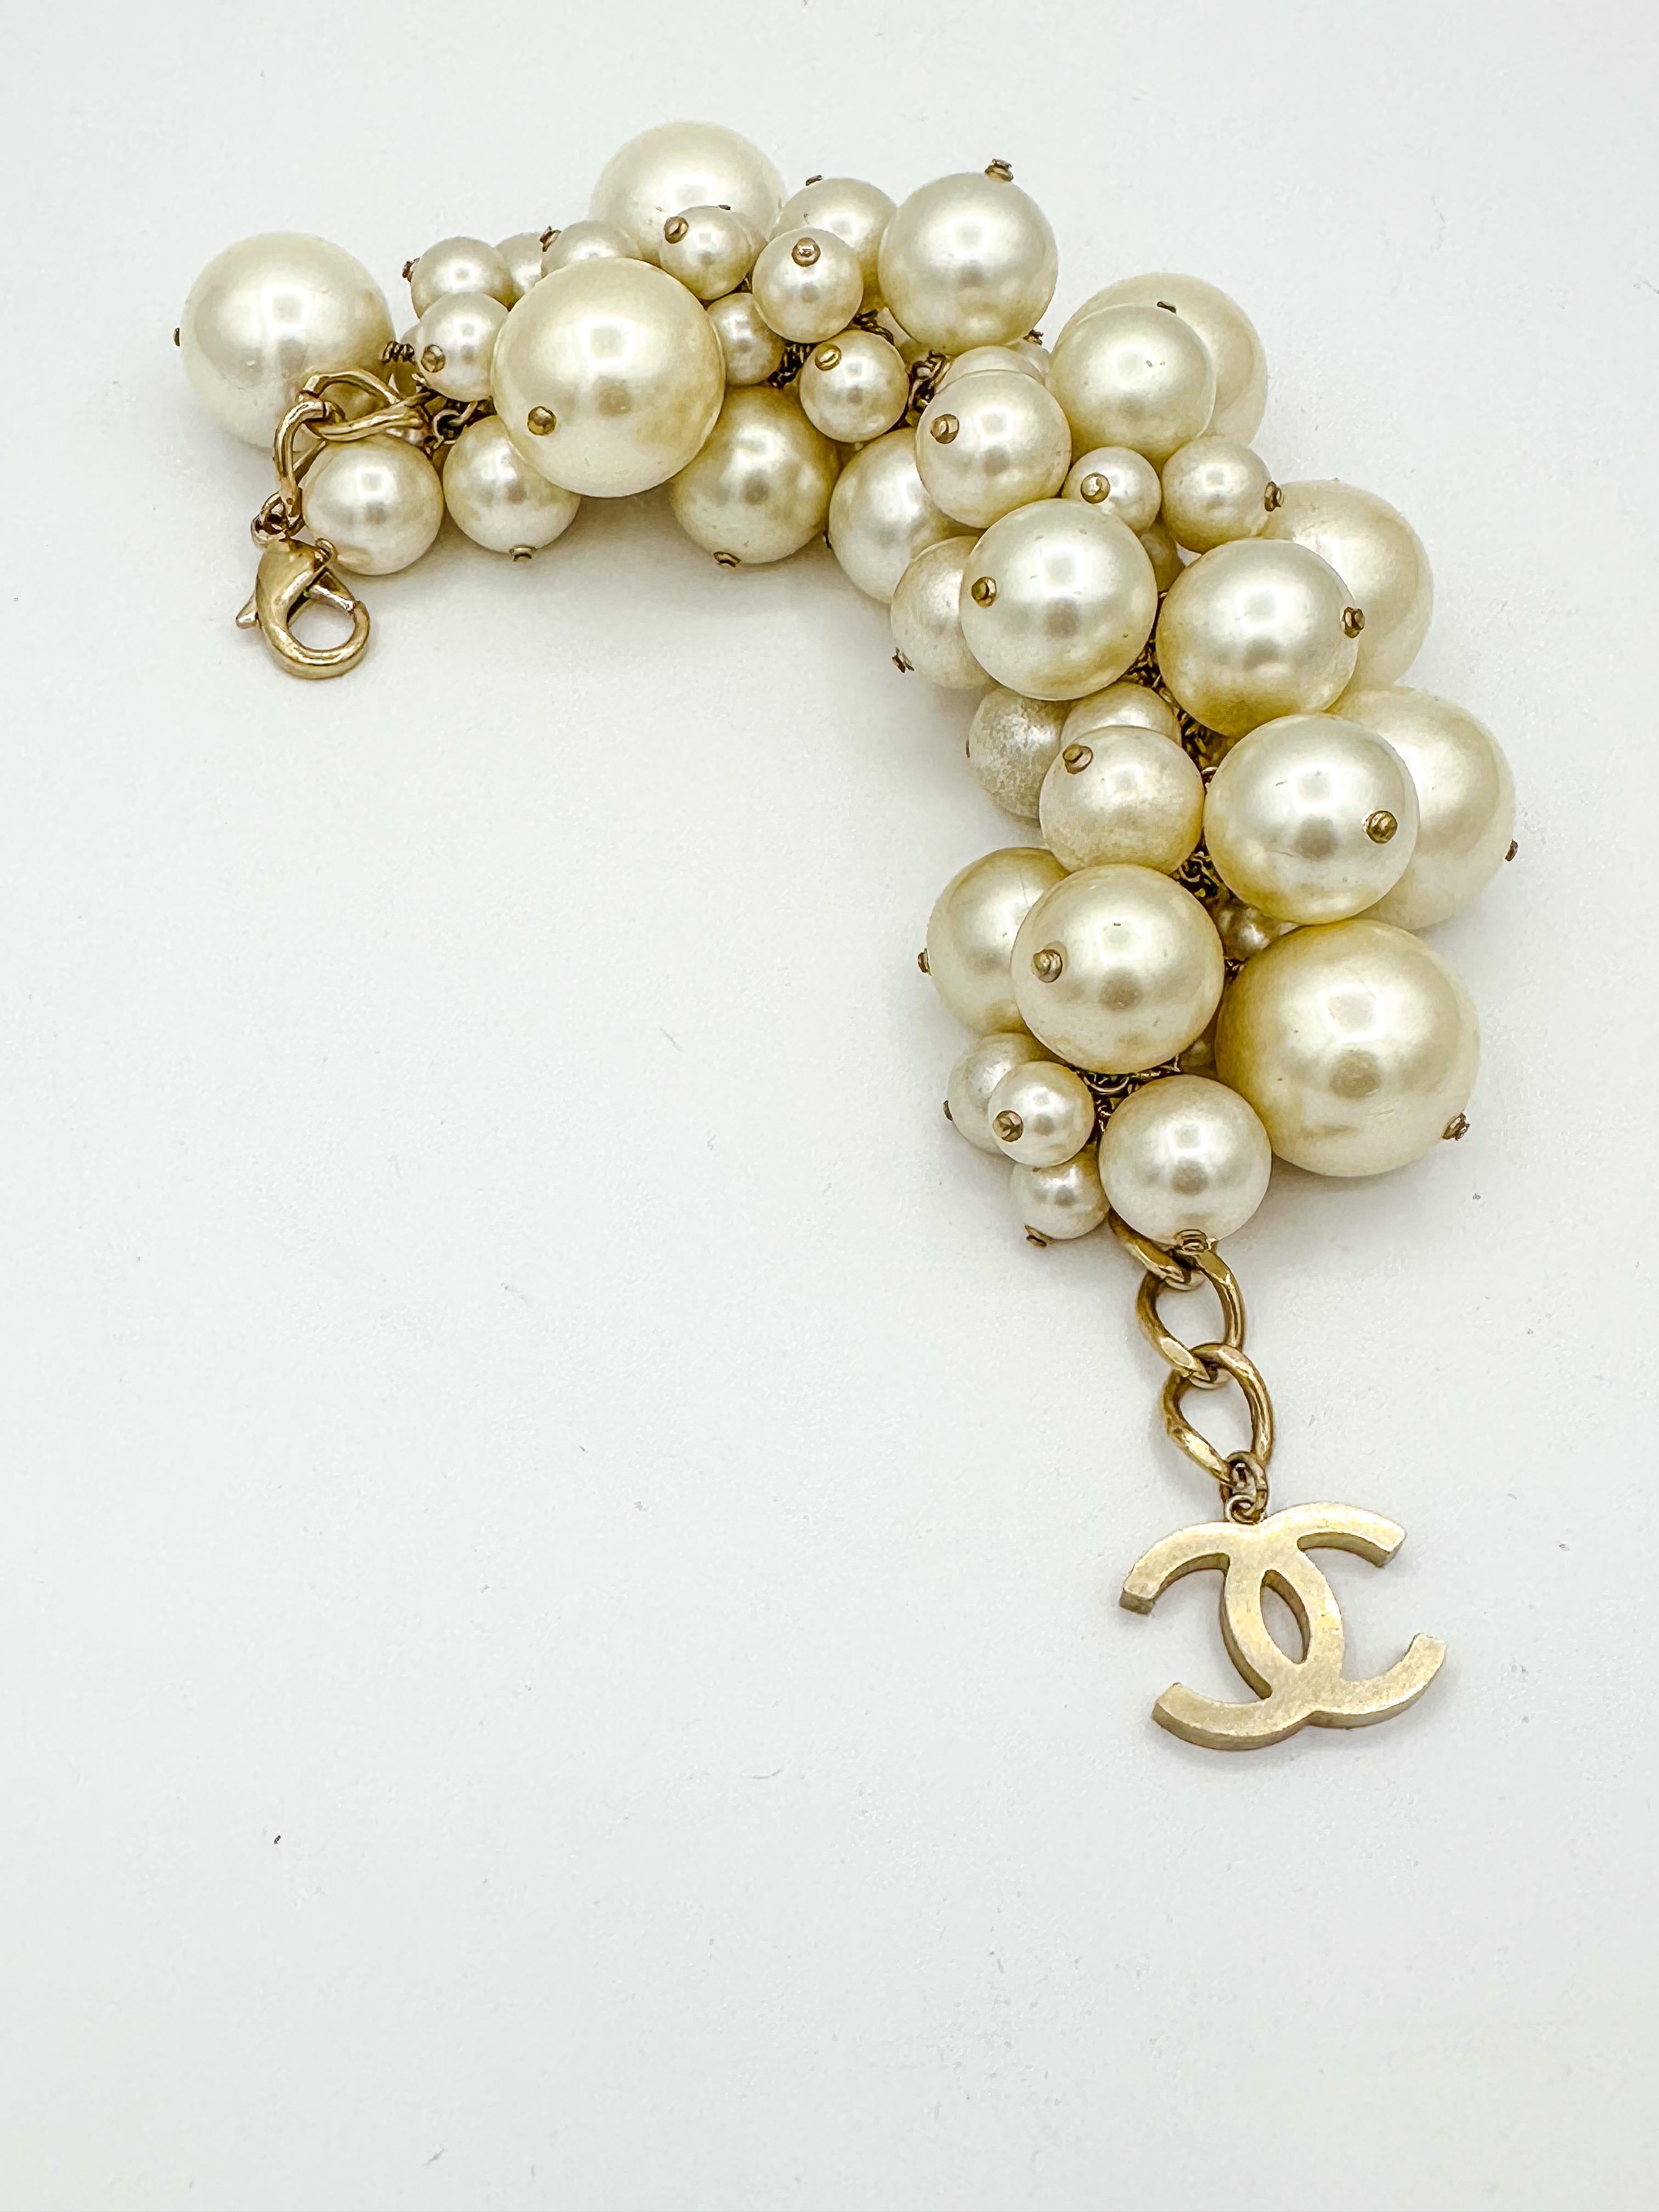 Übergroßes Chanel Frühjahr 2013 Runway Perlenarmband.  Gebürstetes, goldfarbenes Metallkettenglied mit unterschiedlich großen Perlen; ikonischer CC-Logo-Charme 

Messung Länge: 28cm
Die Größe der Perlen variiert von 25 mm im Durchmesser 1 Perle, 2